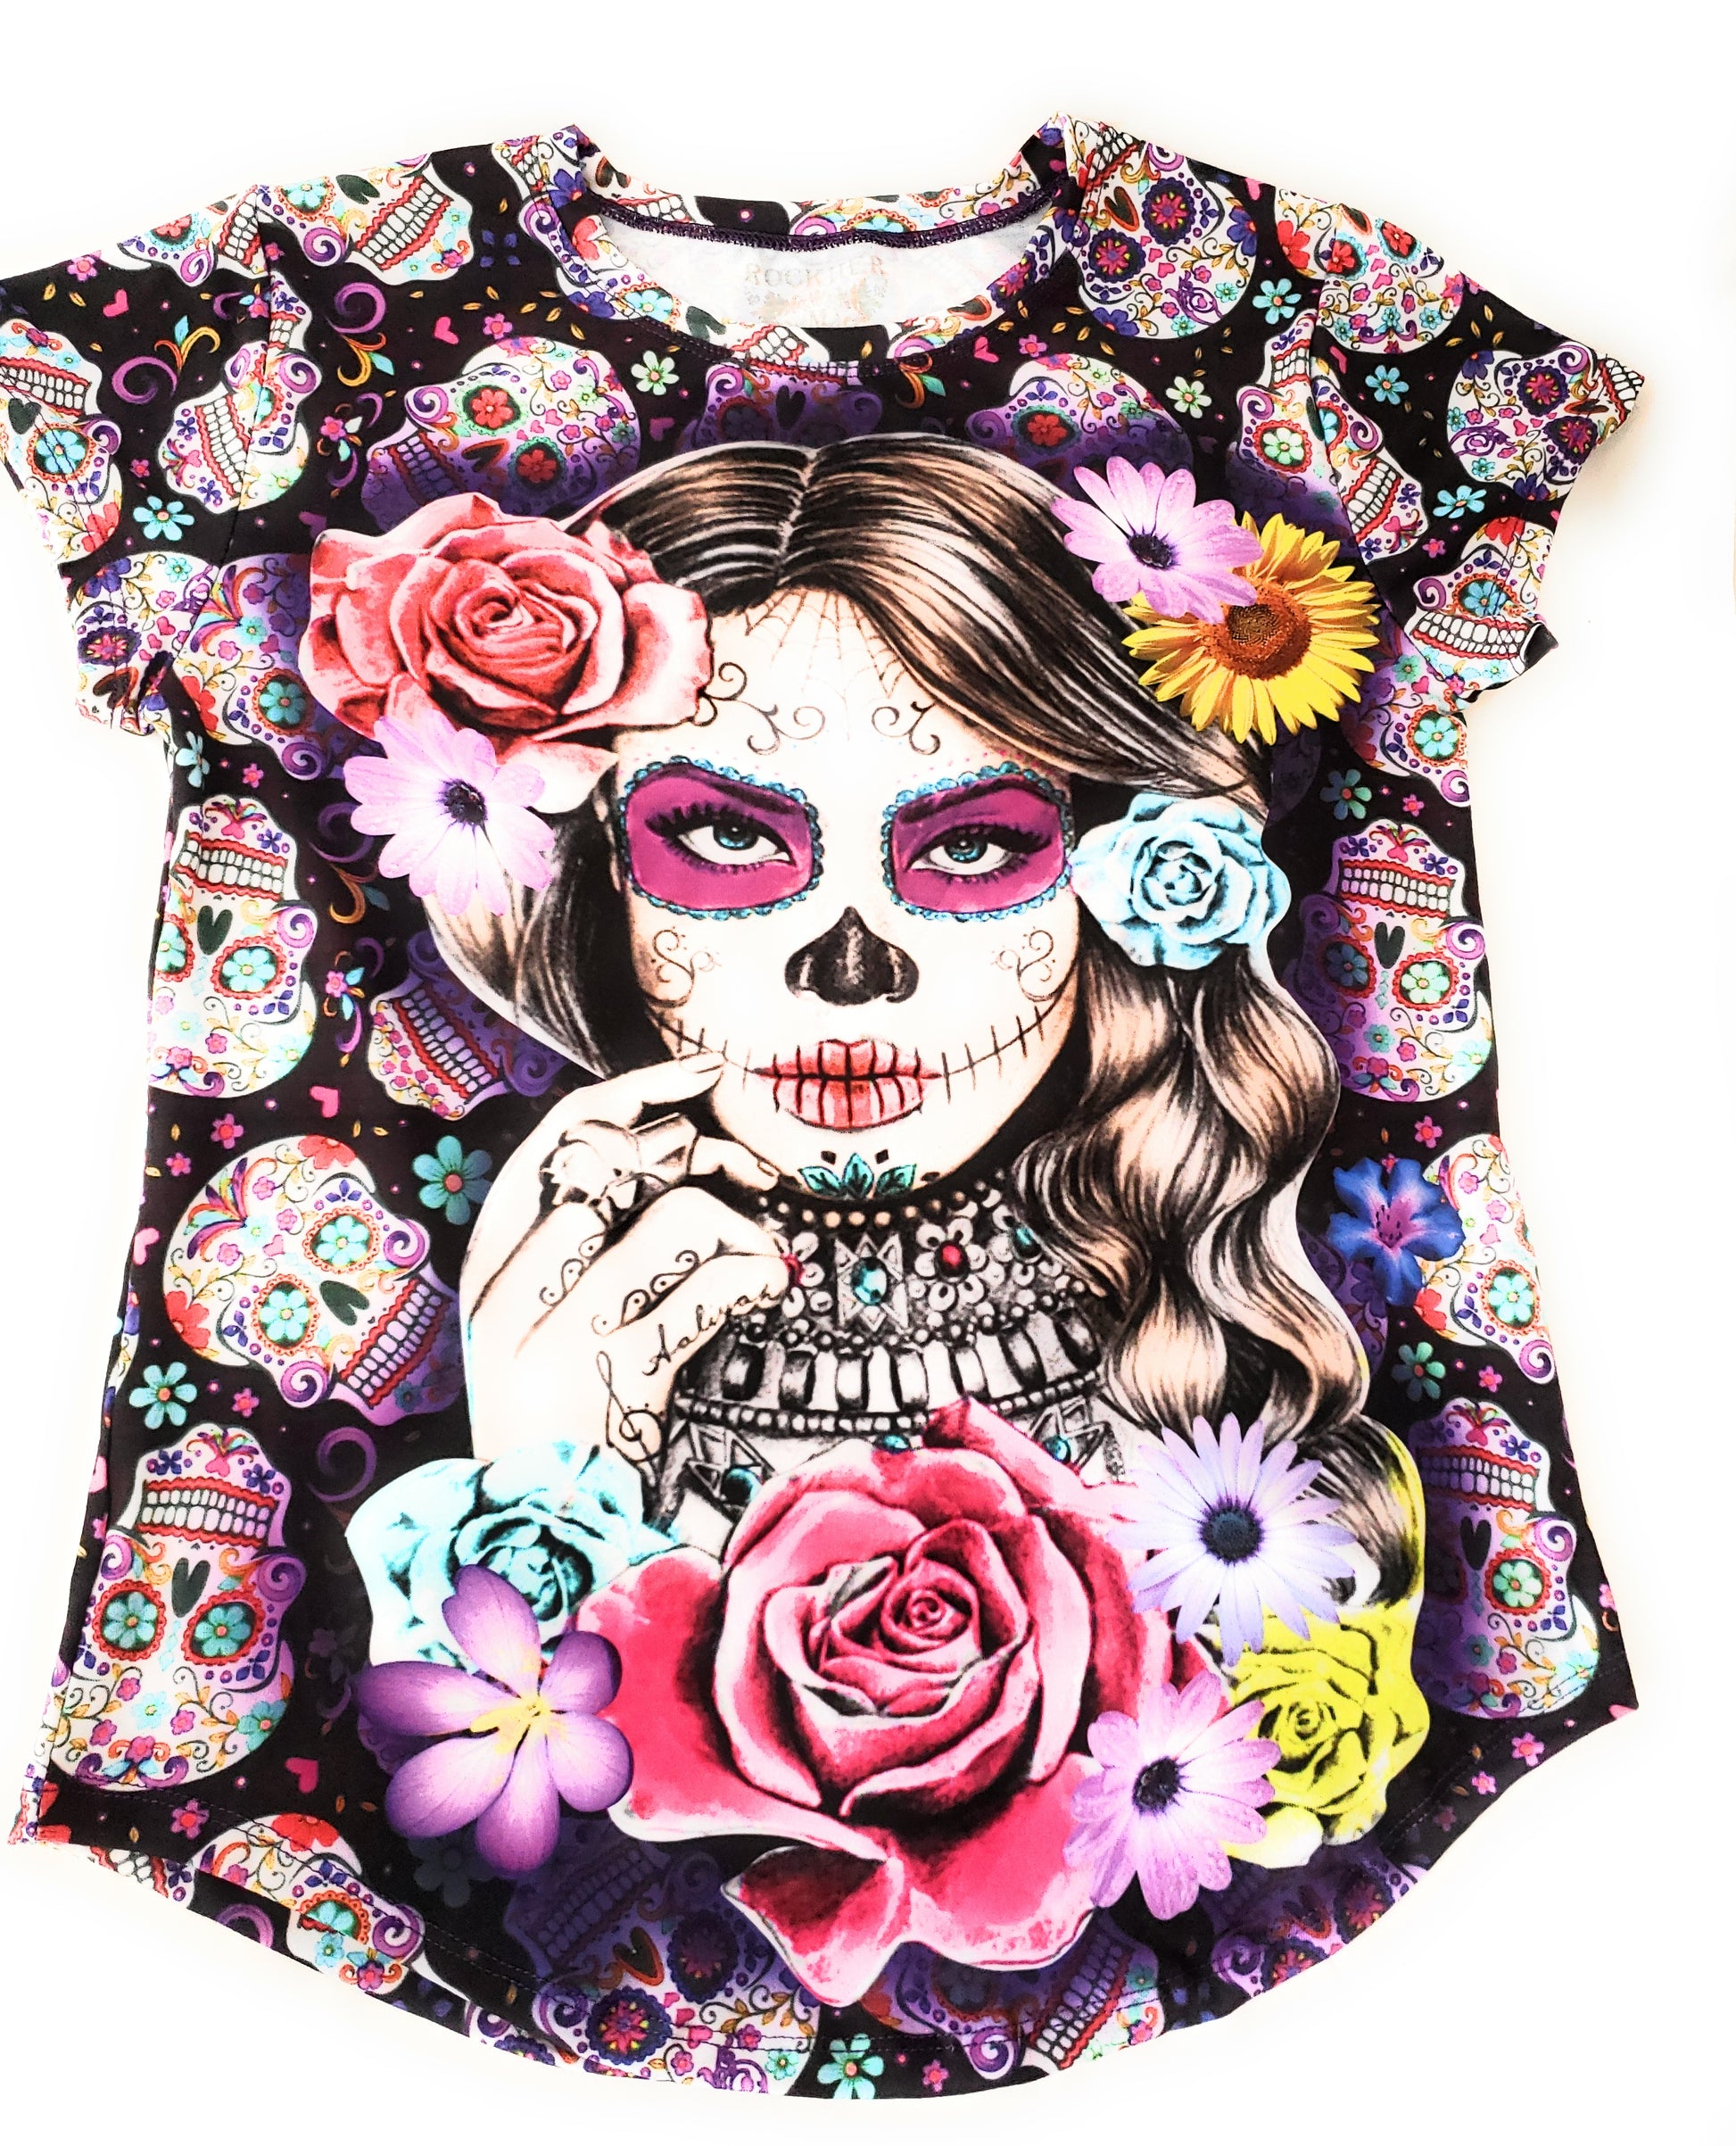 La Catrina Mexican T-Shirt Sugar Skull Full Print Graphic Tee Dia De Muertos - The Little Pueblo